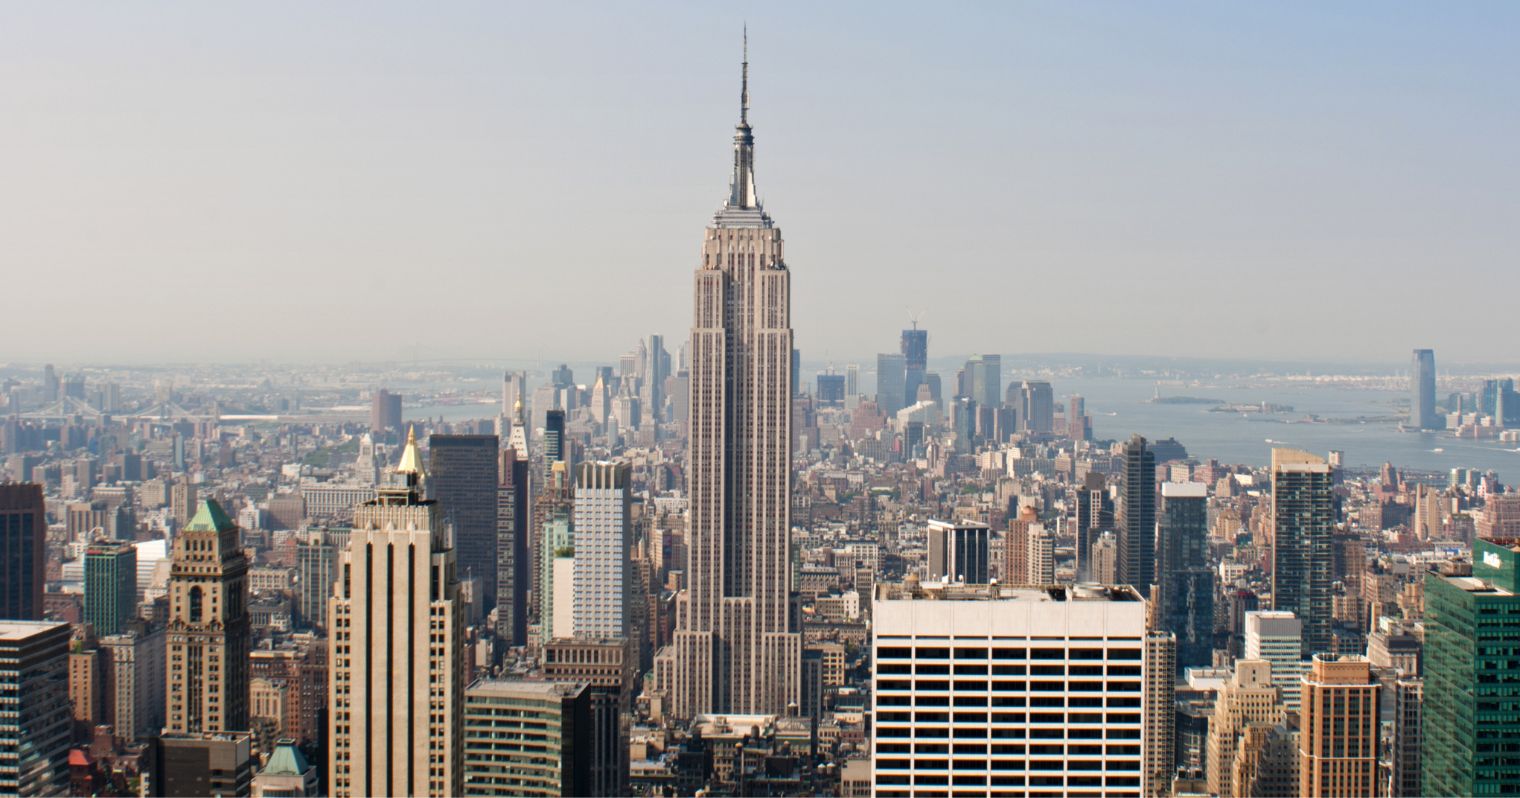 Empire State Building kiemelkedik a New York-i látképből.